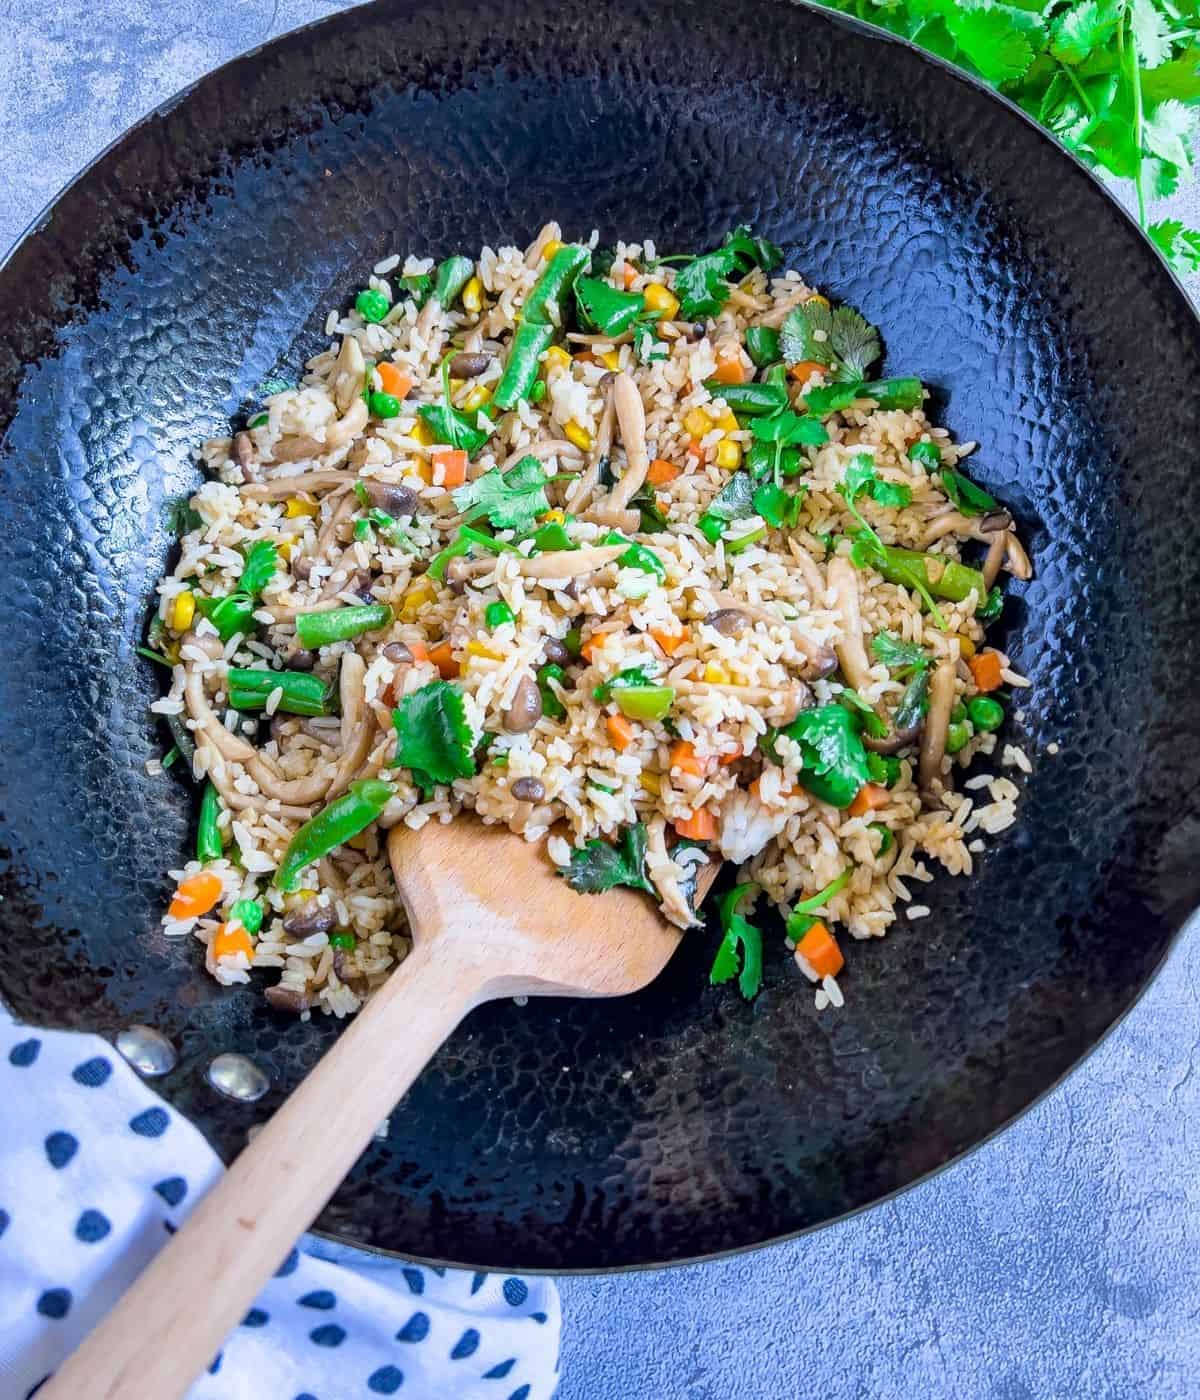 Mushroom vegetable fried rice in a wok.